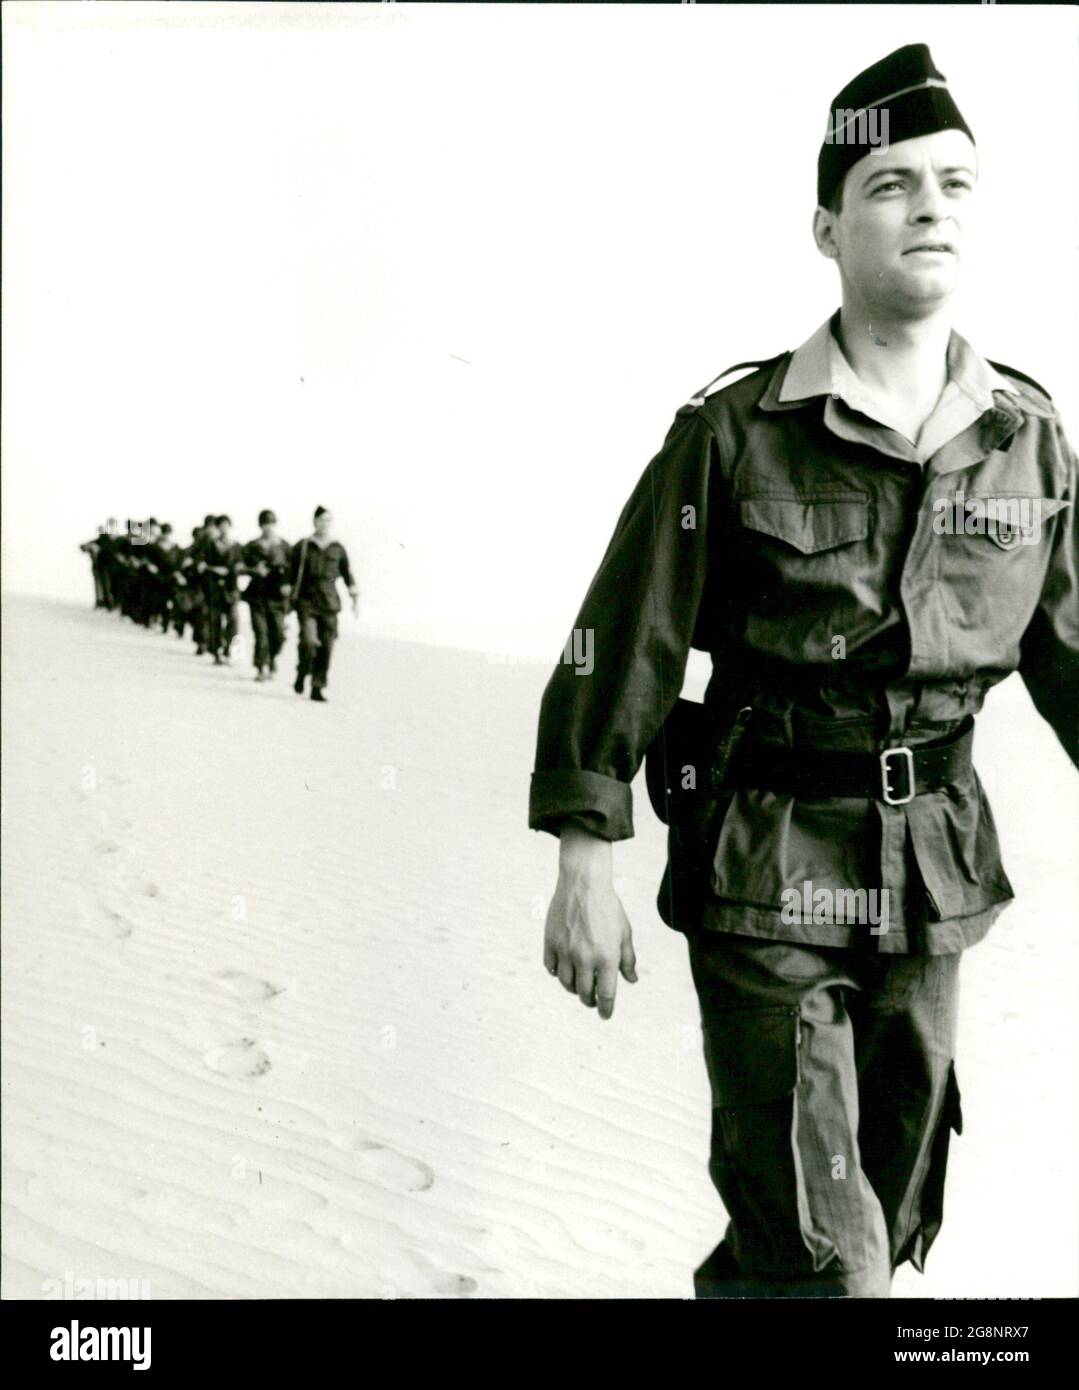 Sinnlose Märsche durch die endlose Wüste stellen die Soldaten im Algerienkrieg auf eine harte Probe. Dieser junge Leutnant (Reent Reins) muss später vor Gericht von den grausamen Folterungen während des Kriegsgeschehens berichten. Stock Photo